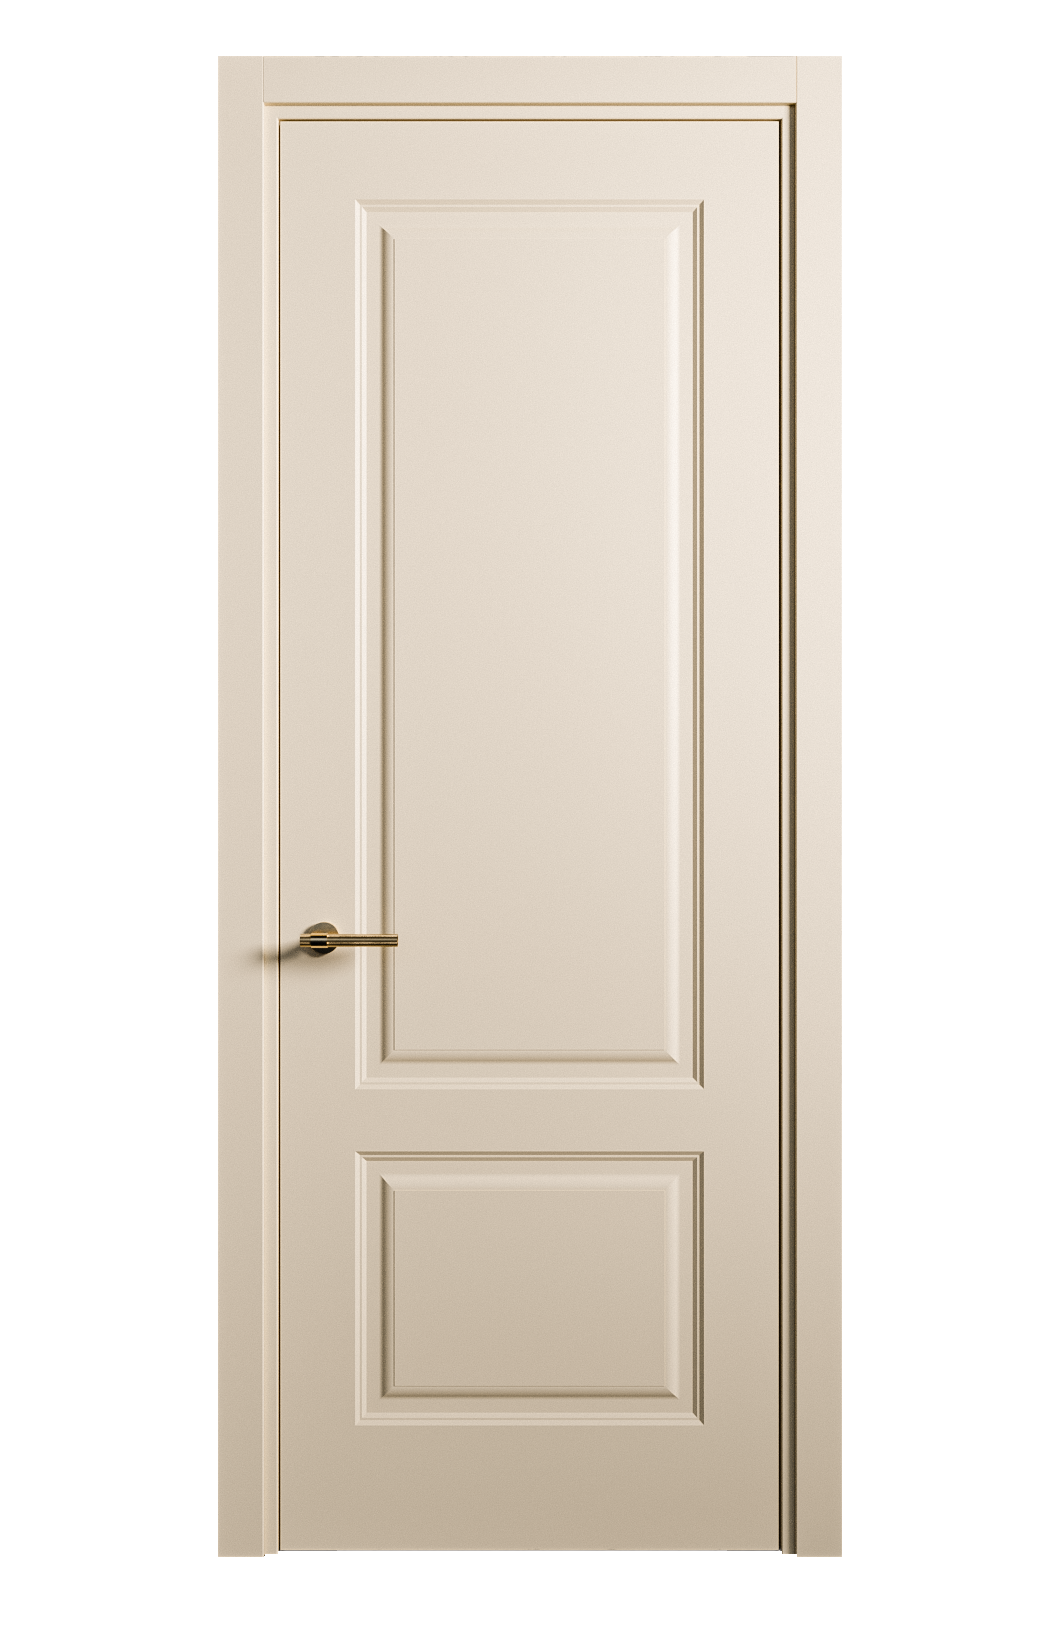 Межкомнатная дверь Вита-1 глухая эмаль ral 1015 26259